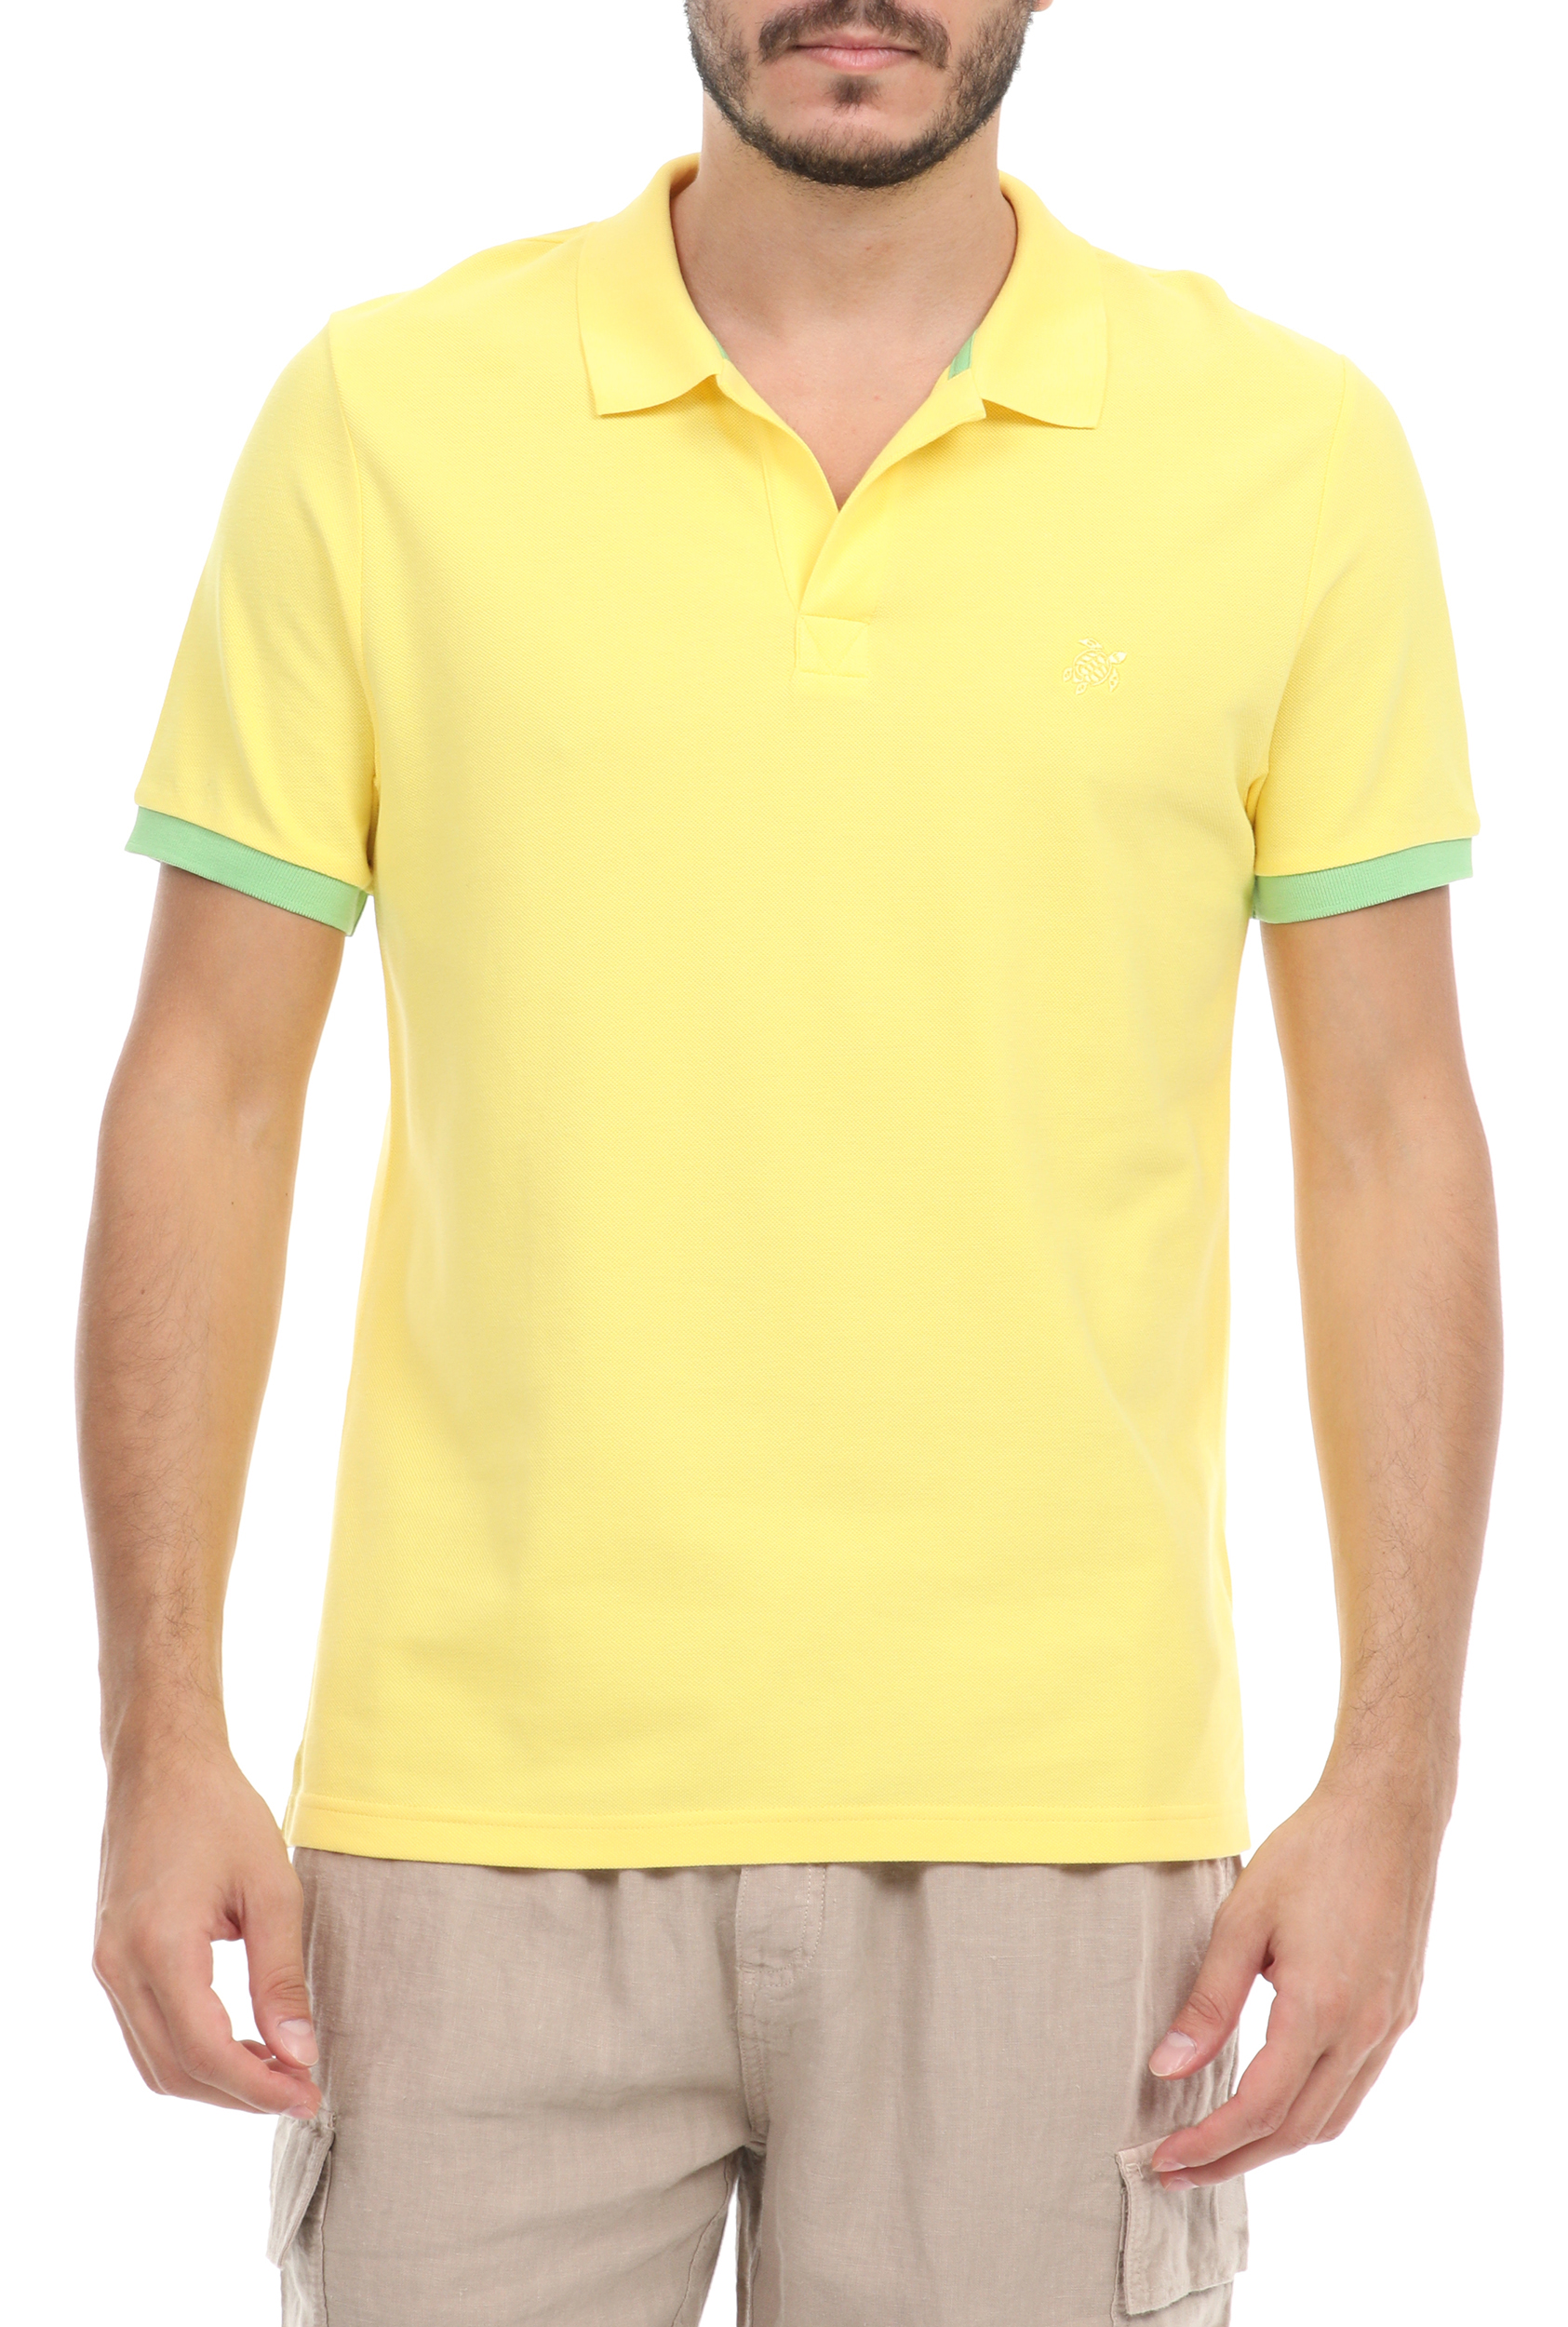 Ανδρικά/Ρούχα/Μπλούζες/Πόλο VILEBREQUIN - Ανδρική polo μπλούζα VILEBREQUIN PALATIN κίτρινη πράσινη